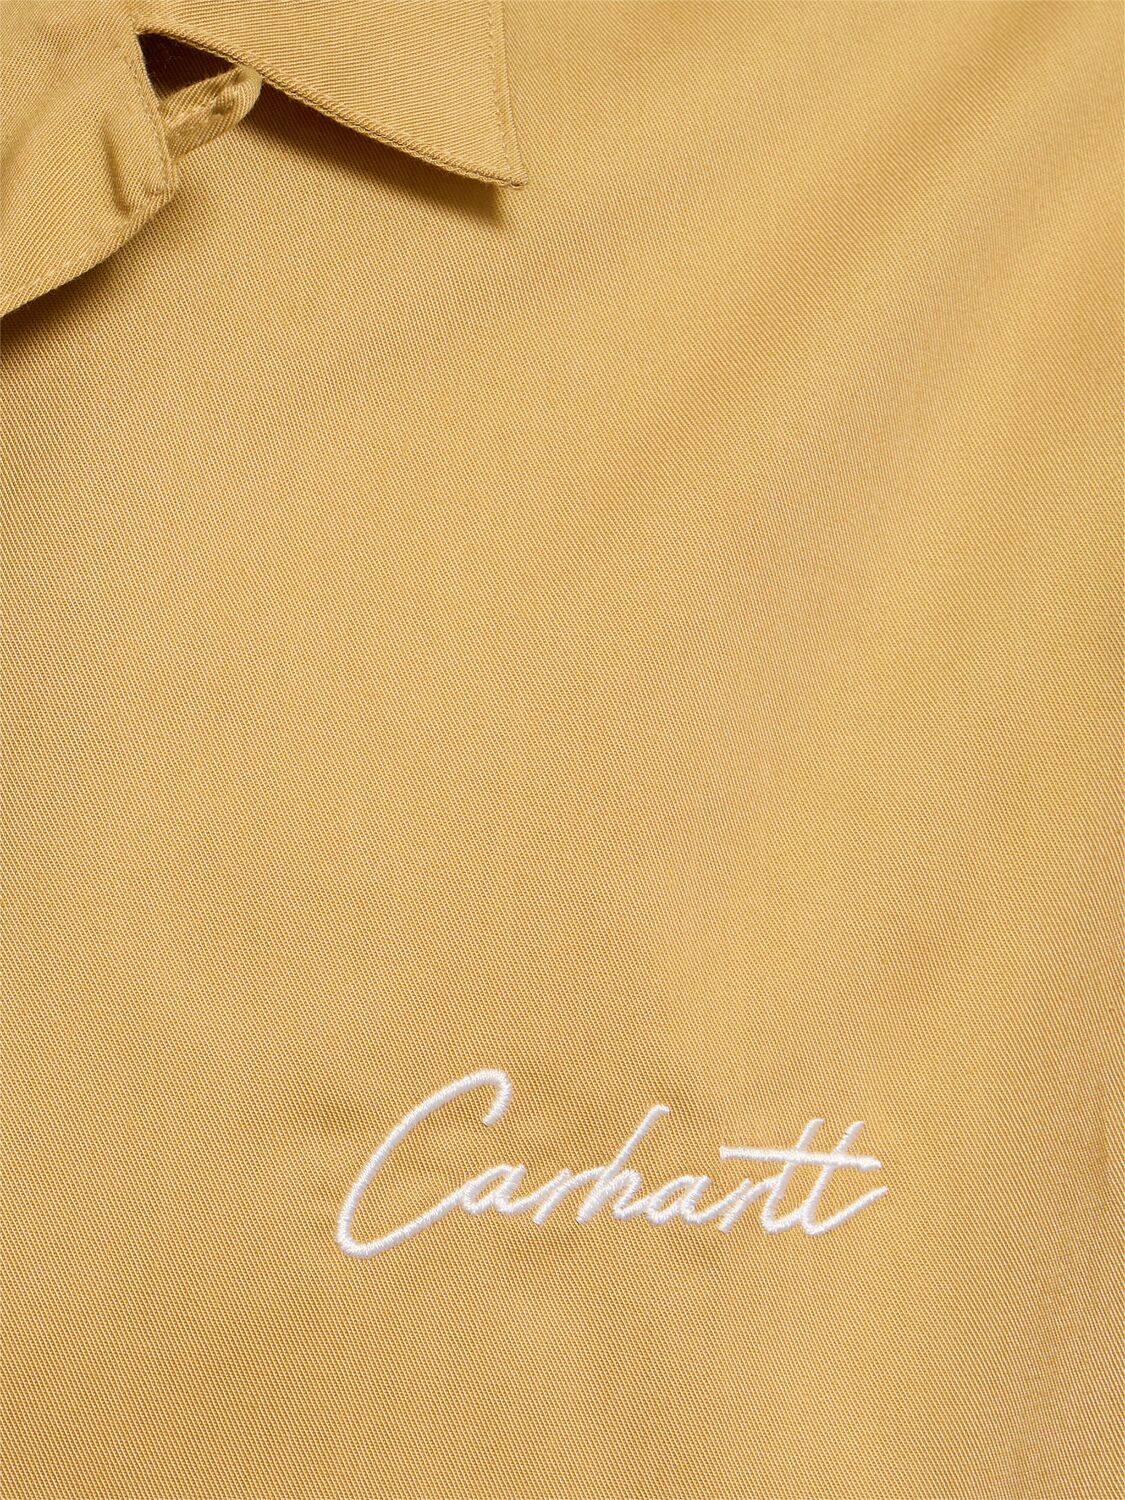 Shop Carhartt Delray Cotton Blend Short Sleeve Shirt In Beige